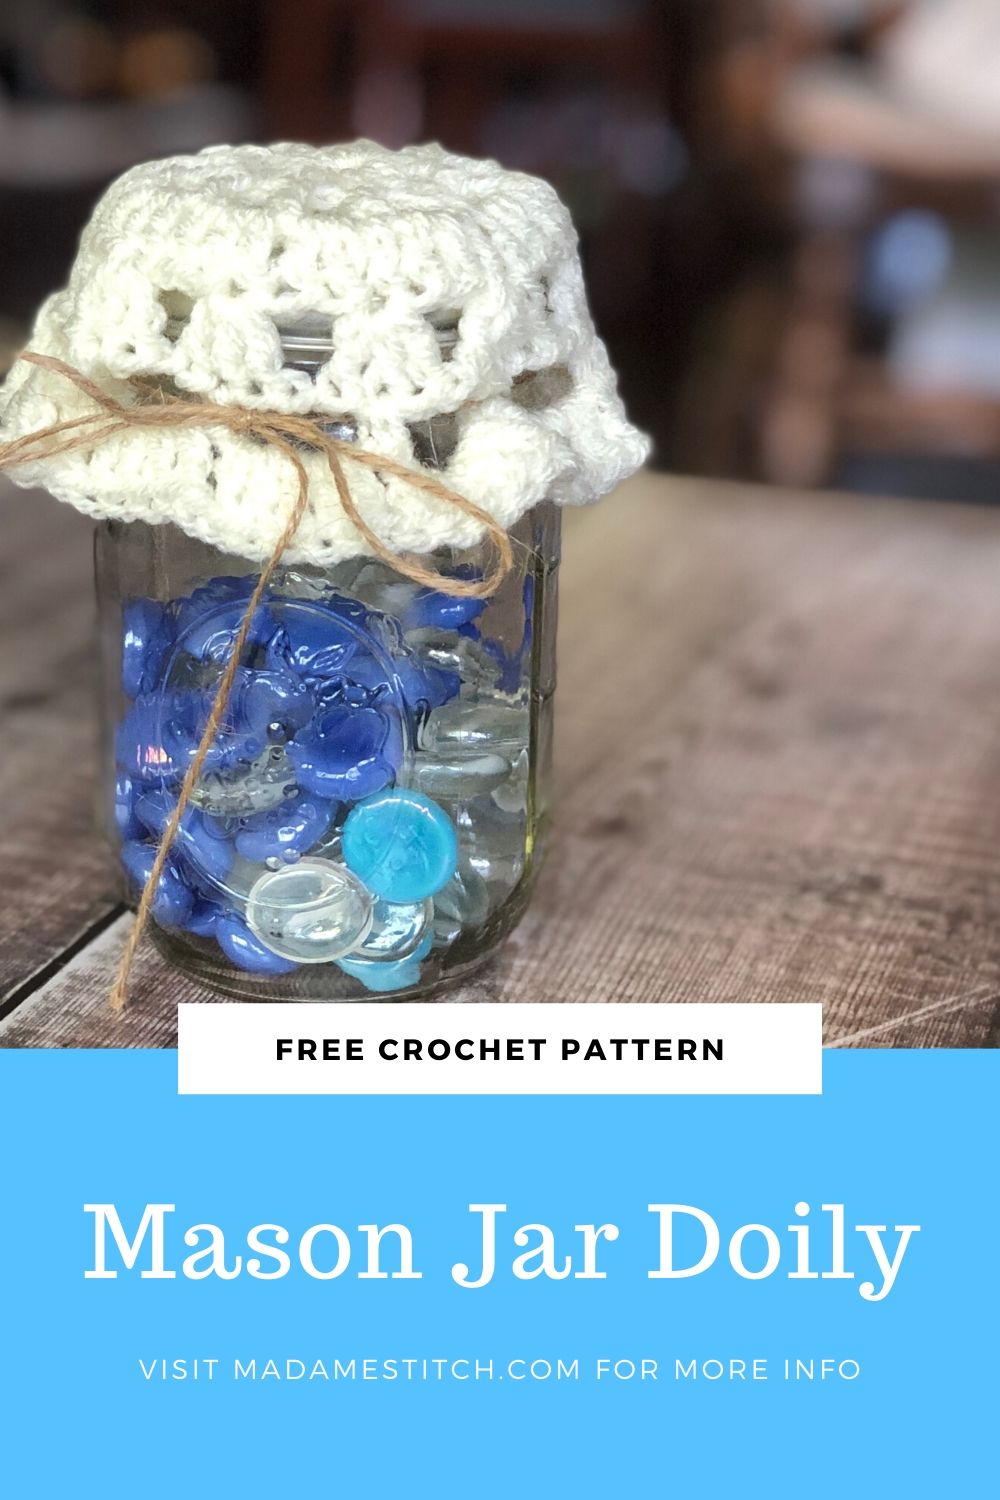 Mason jar crochet doily | Free pattern by MadameStitch